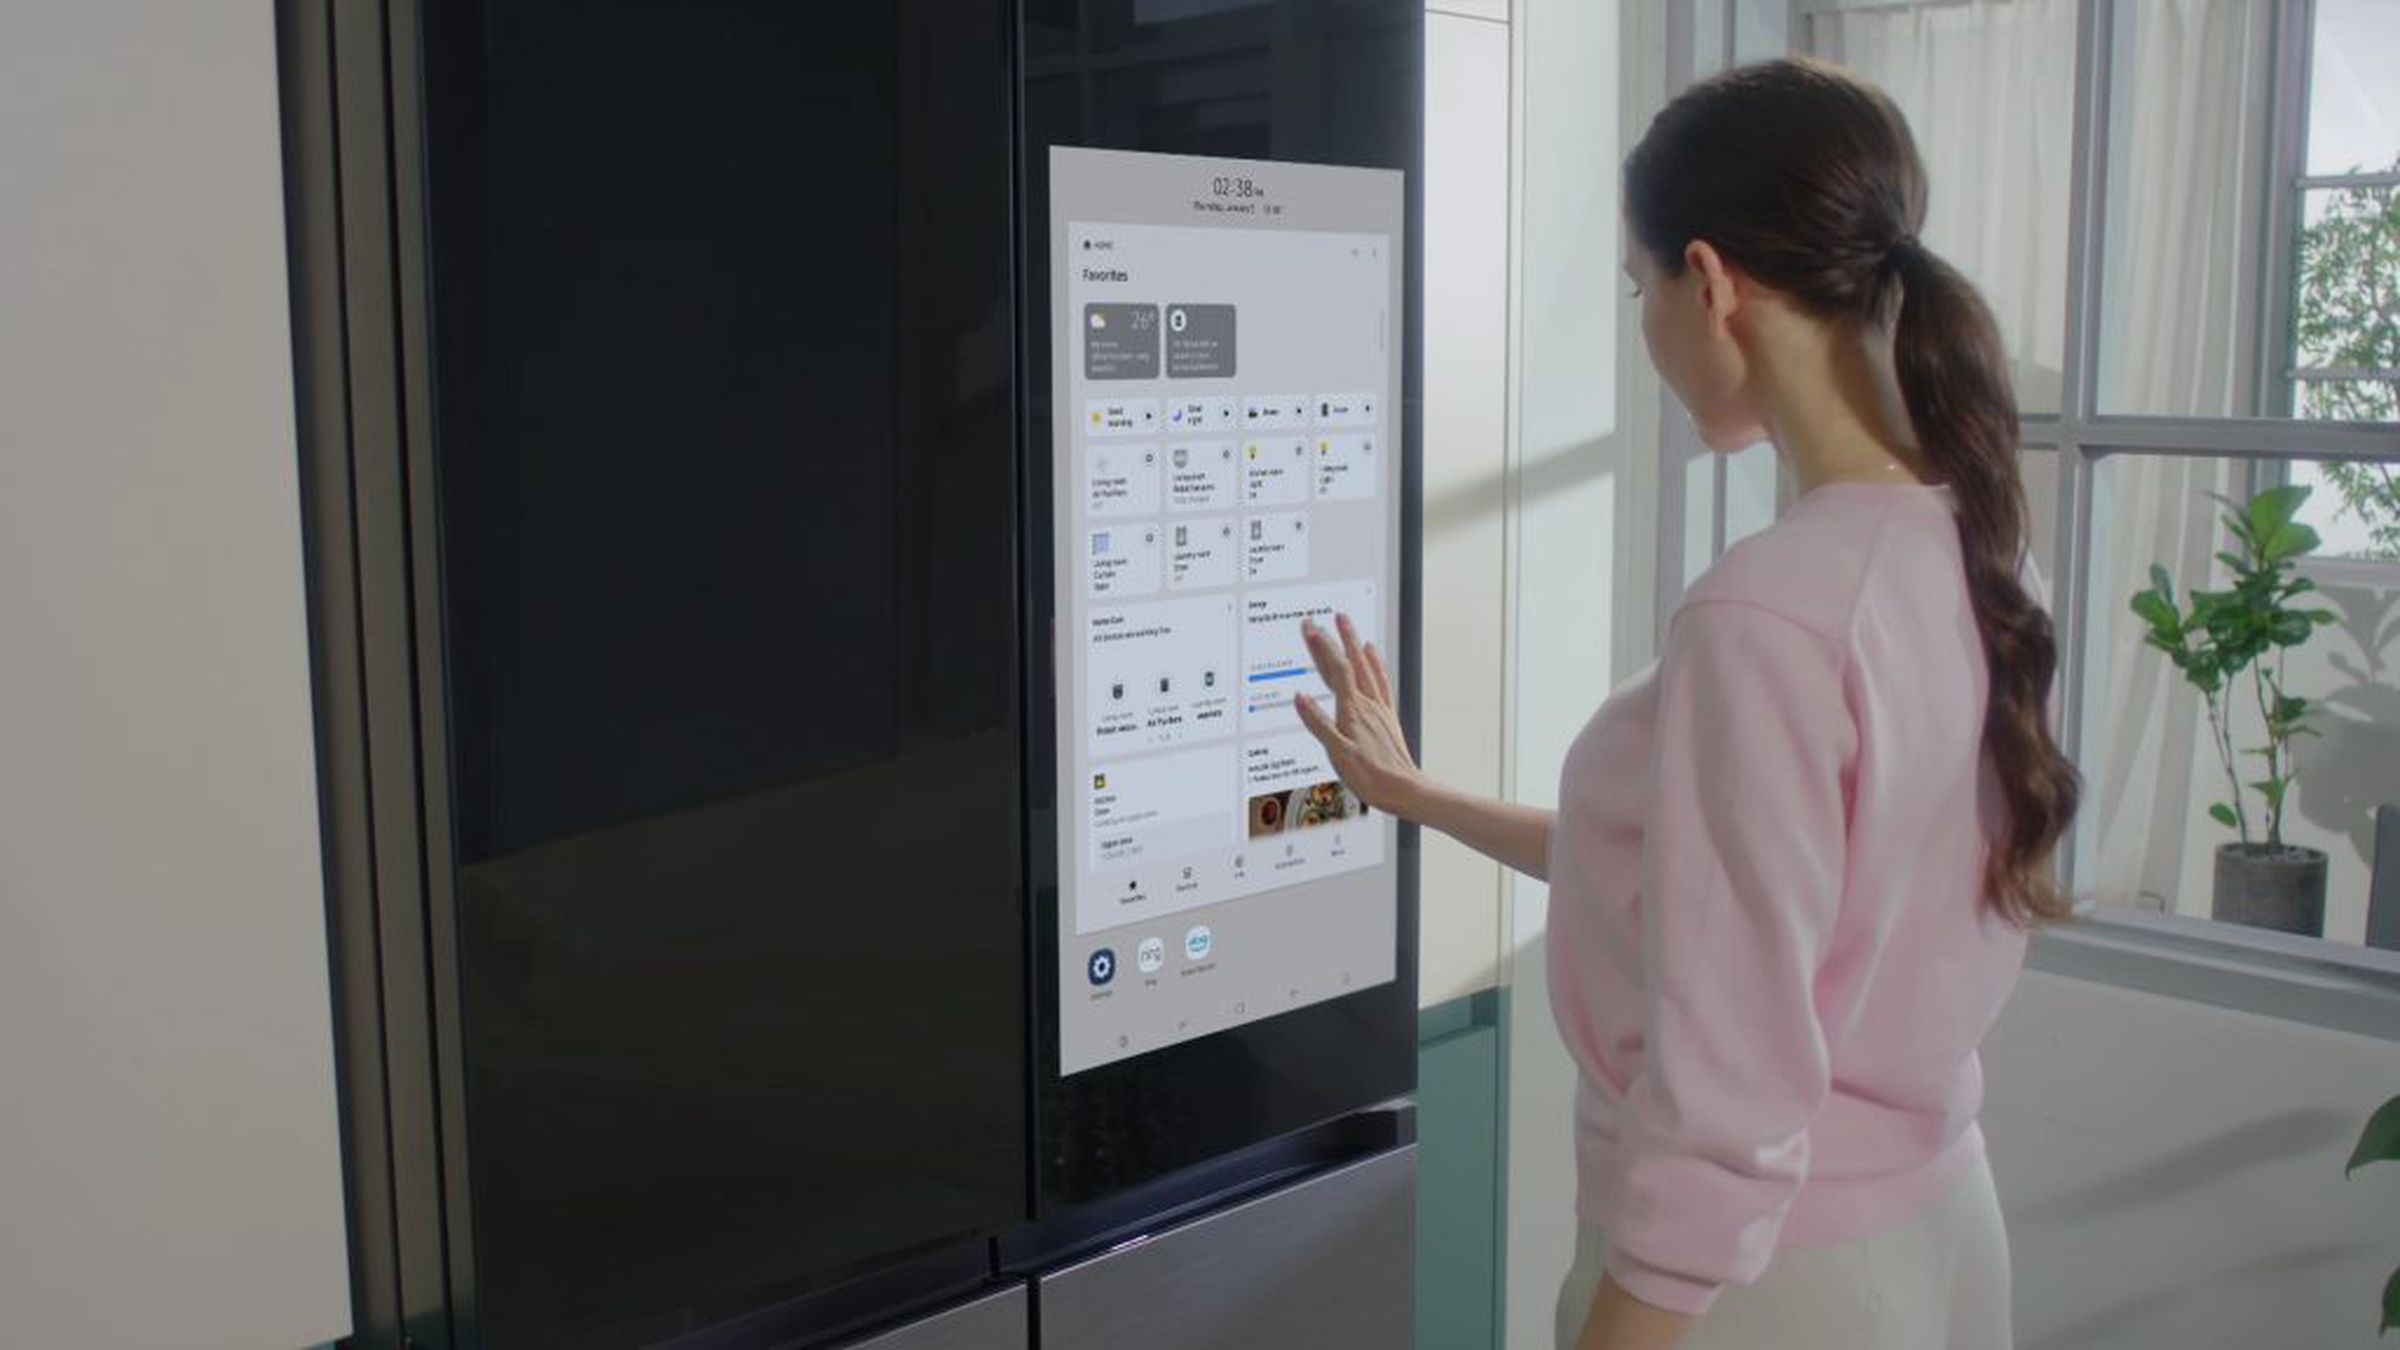 Una mujer usando el refrigerador Samsung Bespoke Refrigerador Family Hub Plus.  Ella está ajustando los controles en la pantalla táctil en una cocina limpia.